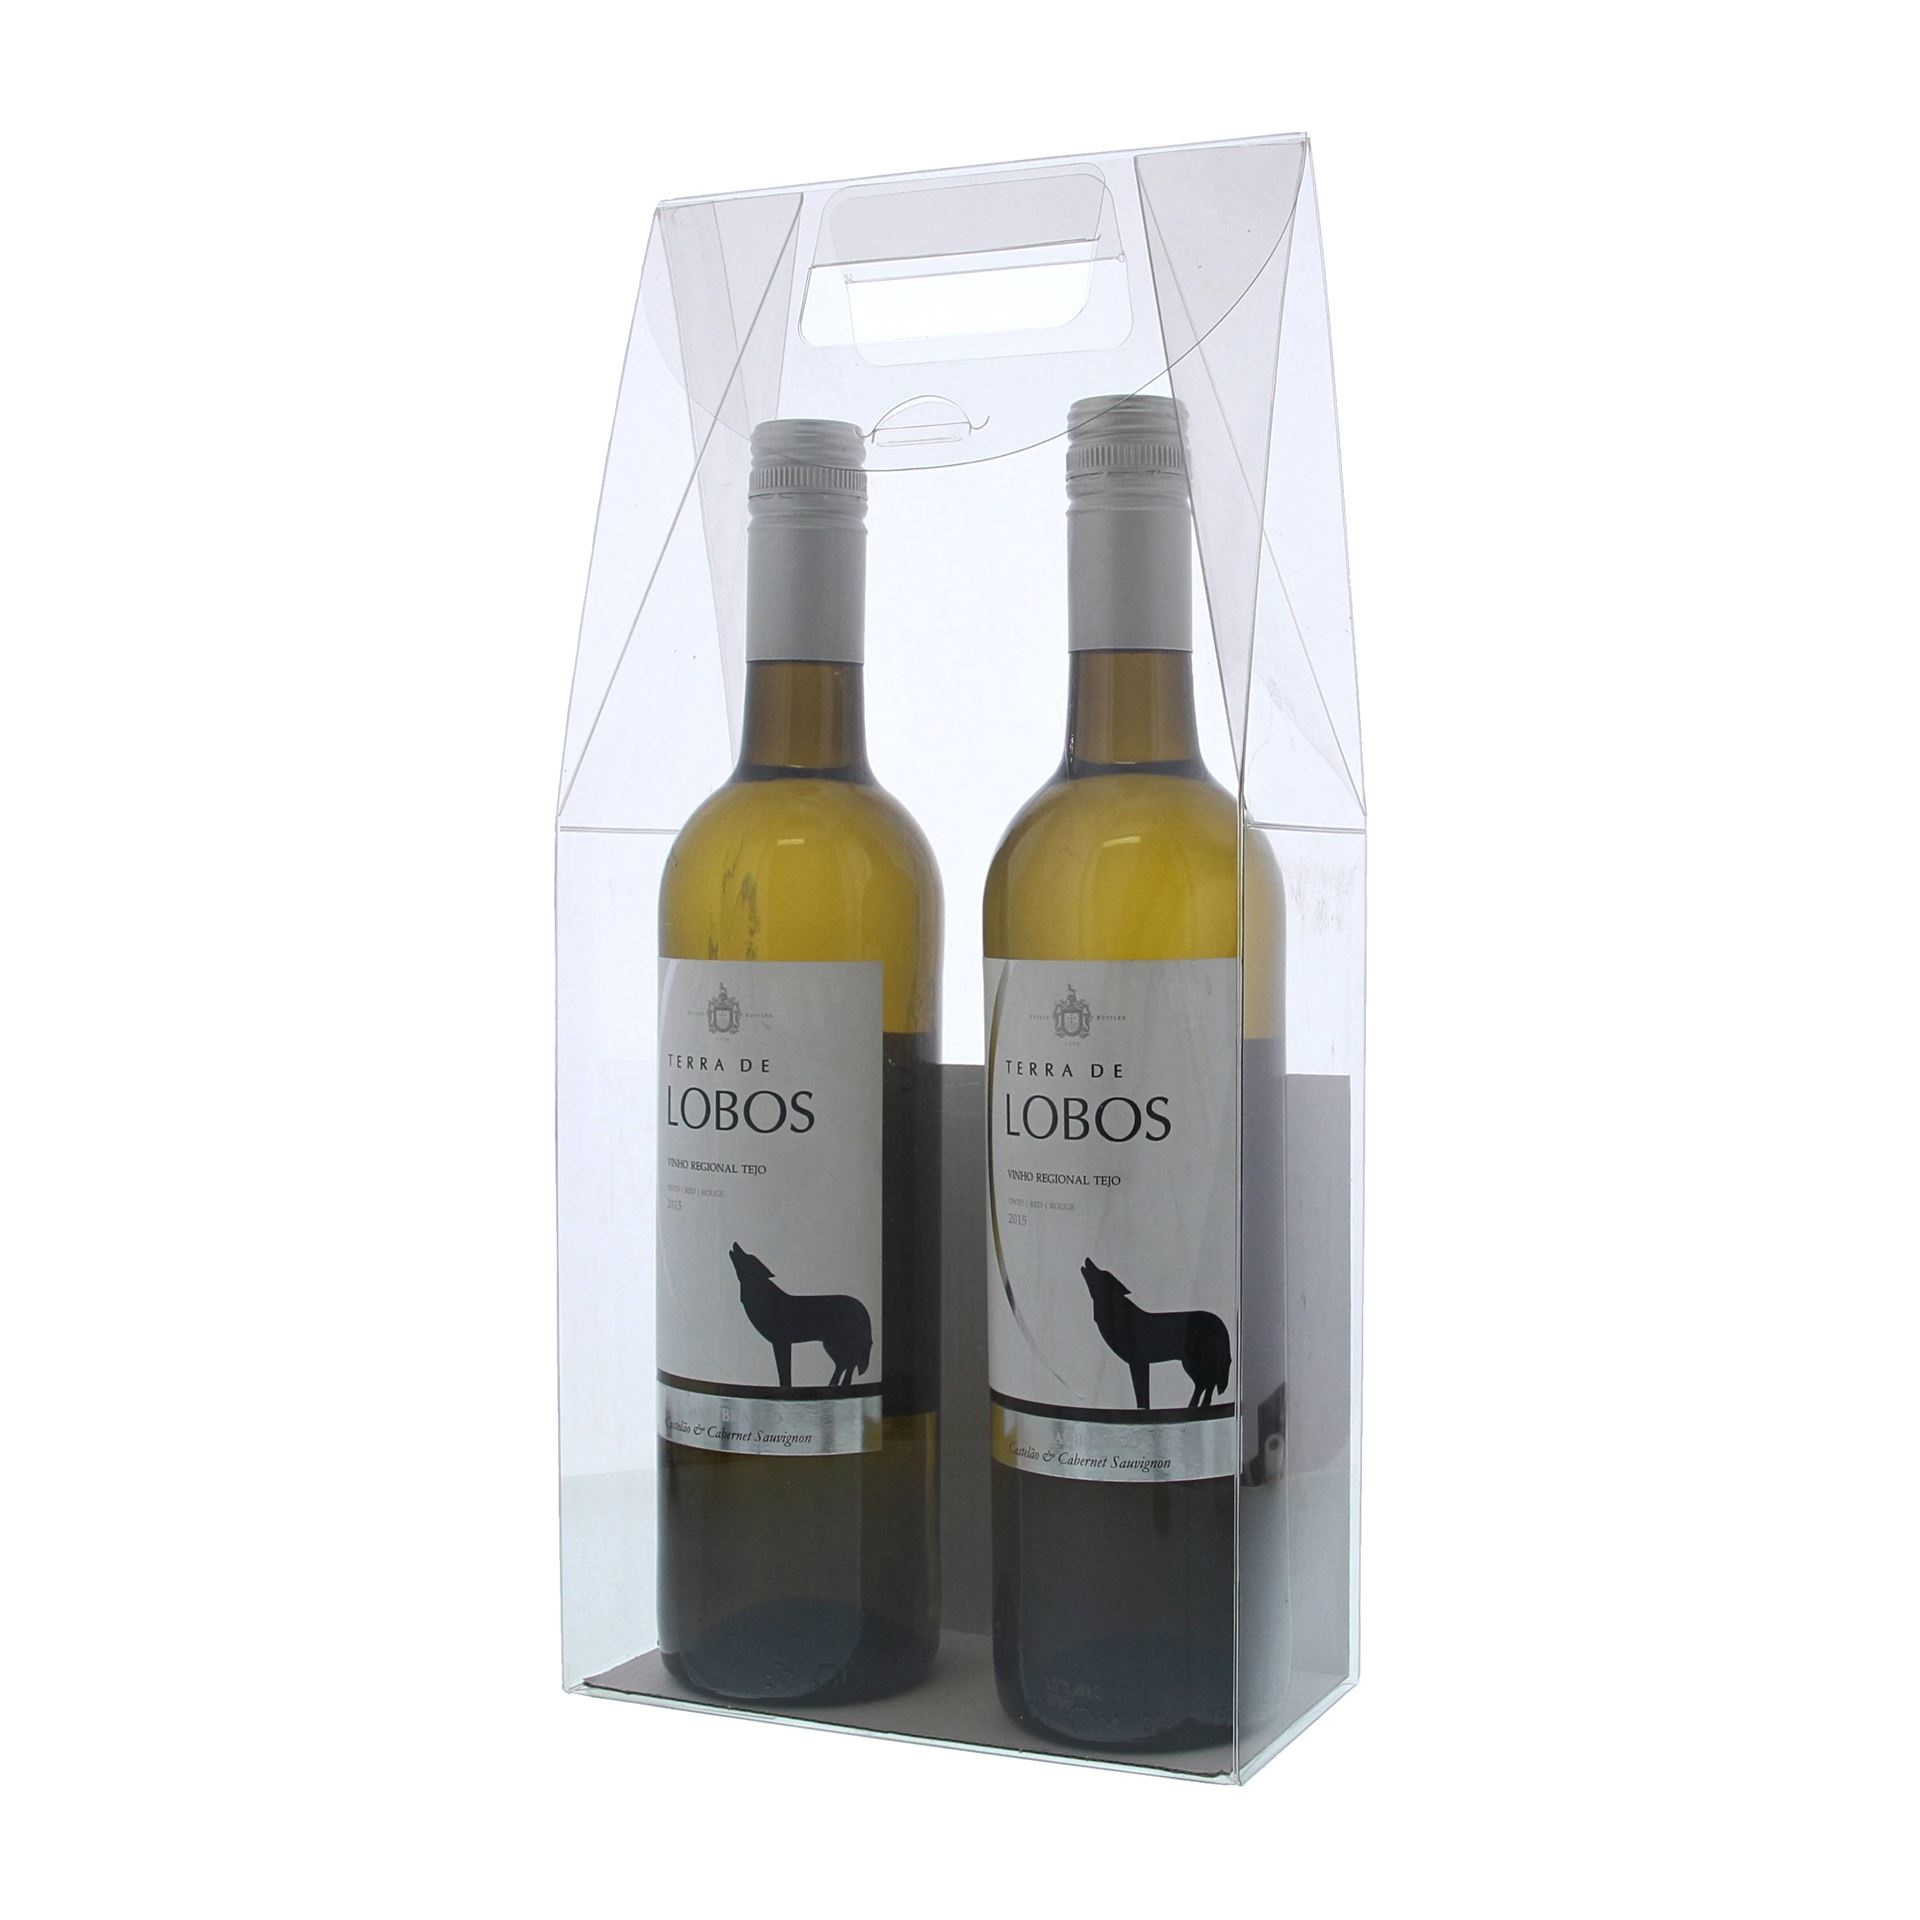 Emballage transparent pour 2 bouteilles à fond blanc- 180* 90*370 mm -10 stuks